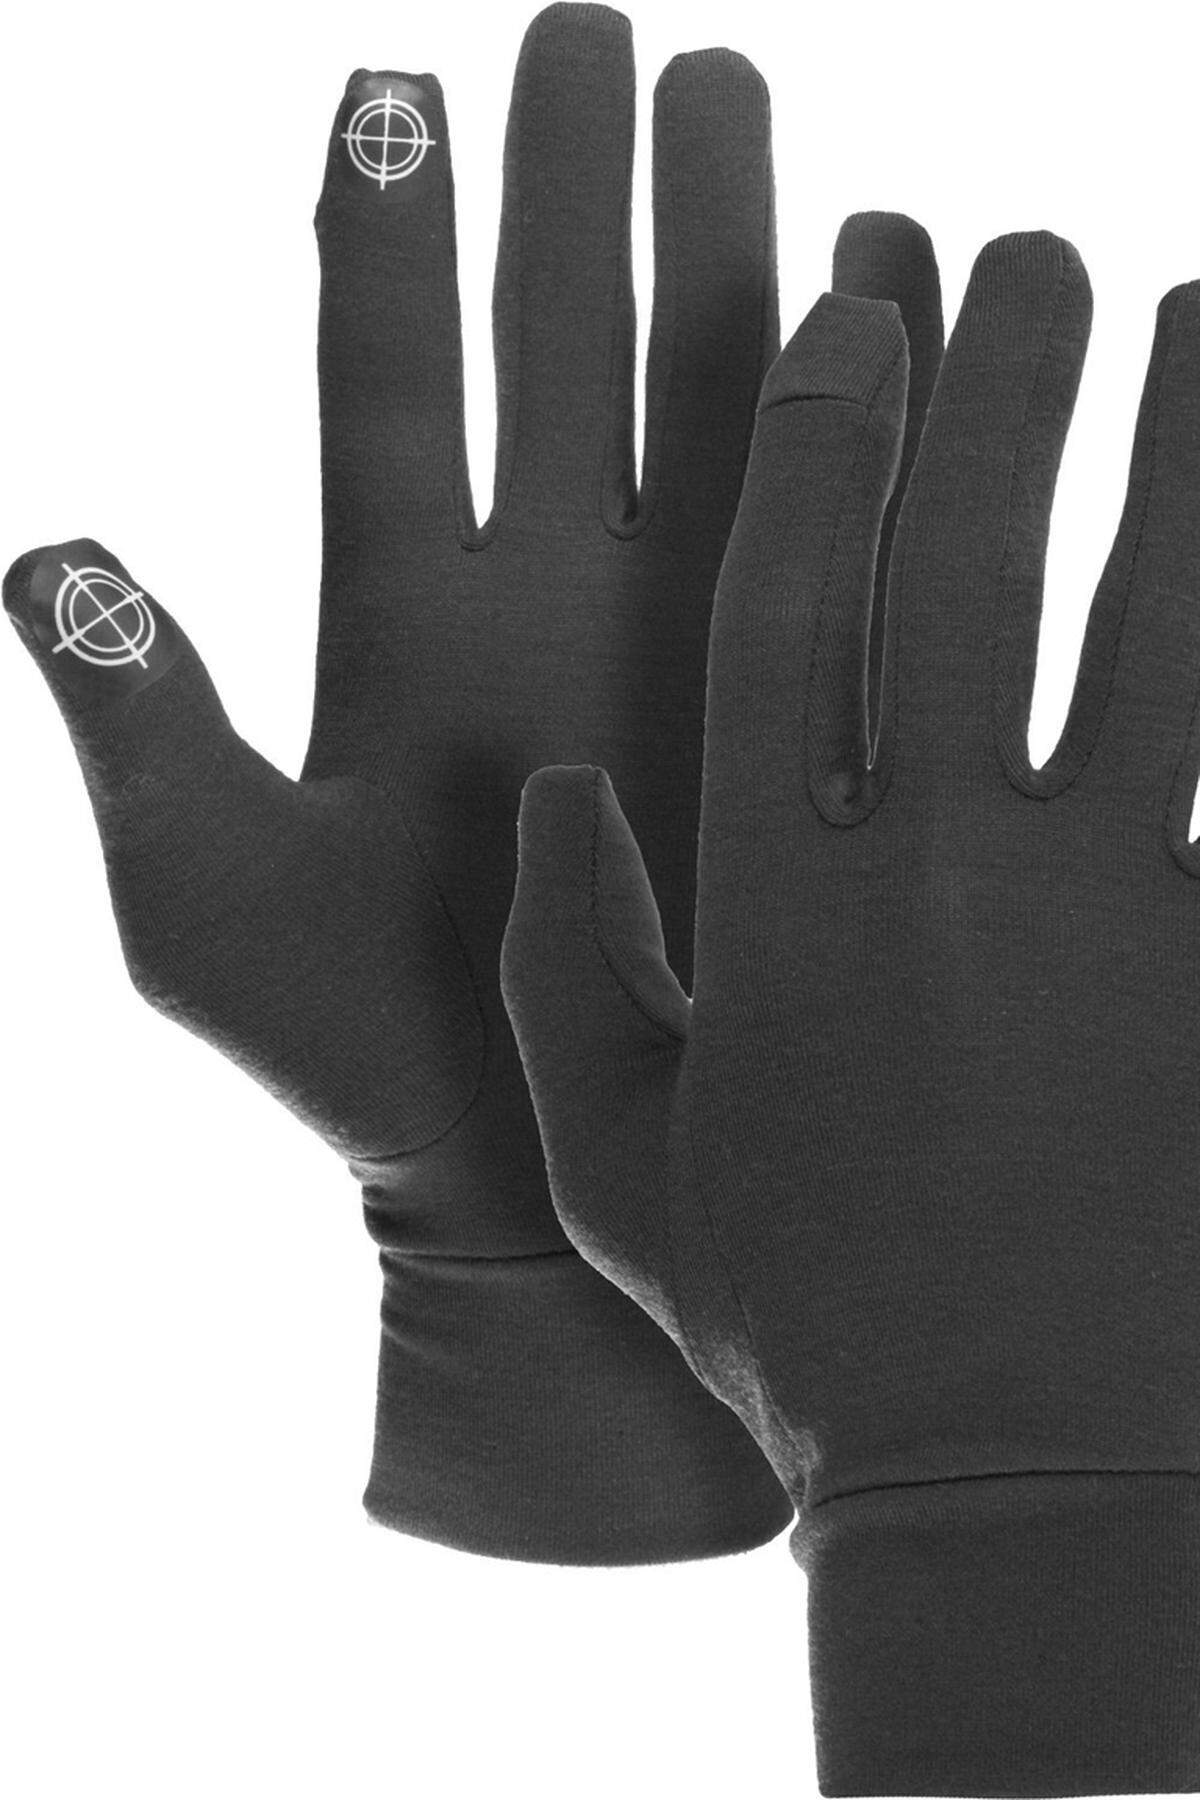 Es wird zwar langsam wieder warm, aber der nächste Winter kommt bestimmt: Bei Touchscreen-Handschuhen ist das Angebot mittlerweile sehr groß. Wer die klassische Strick-Optik nicht schätzt, wird vielleicht bei Burton fündig. Die Snowboard-Marke bietet seine Liner-Handschuhe in verschiedenen Designs.